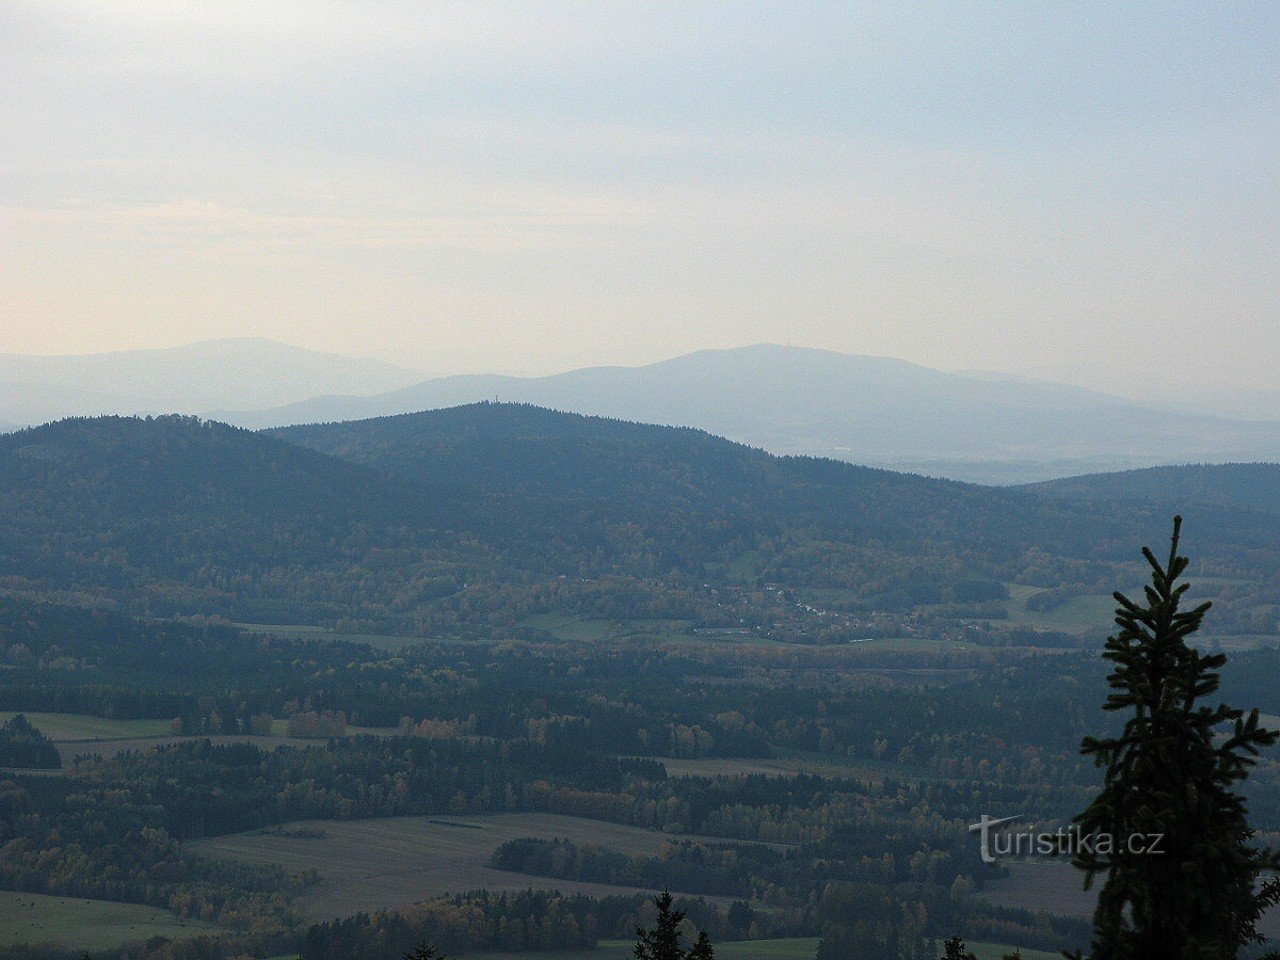 Slepíčí hory de Kráví hora (Kleť en arrière-plan)